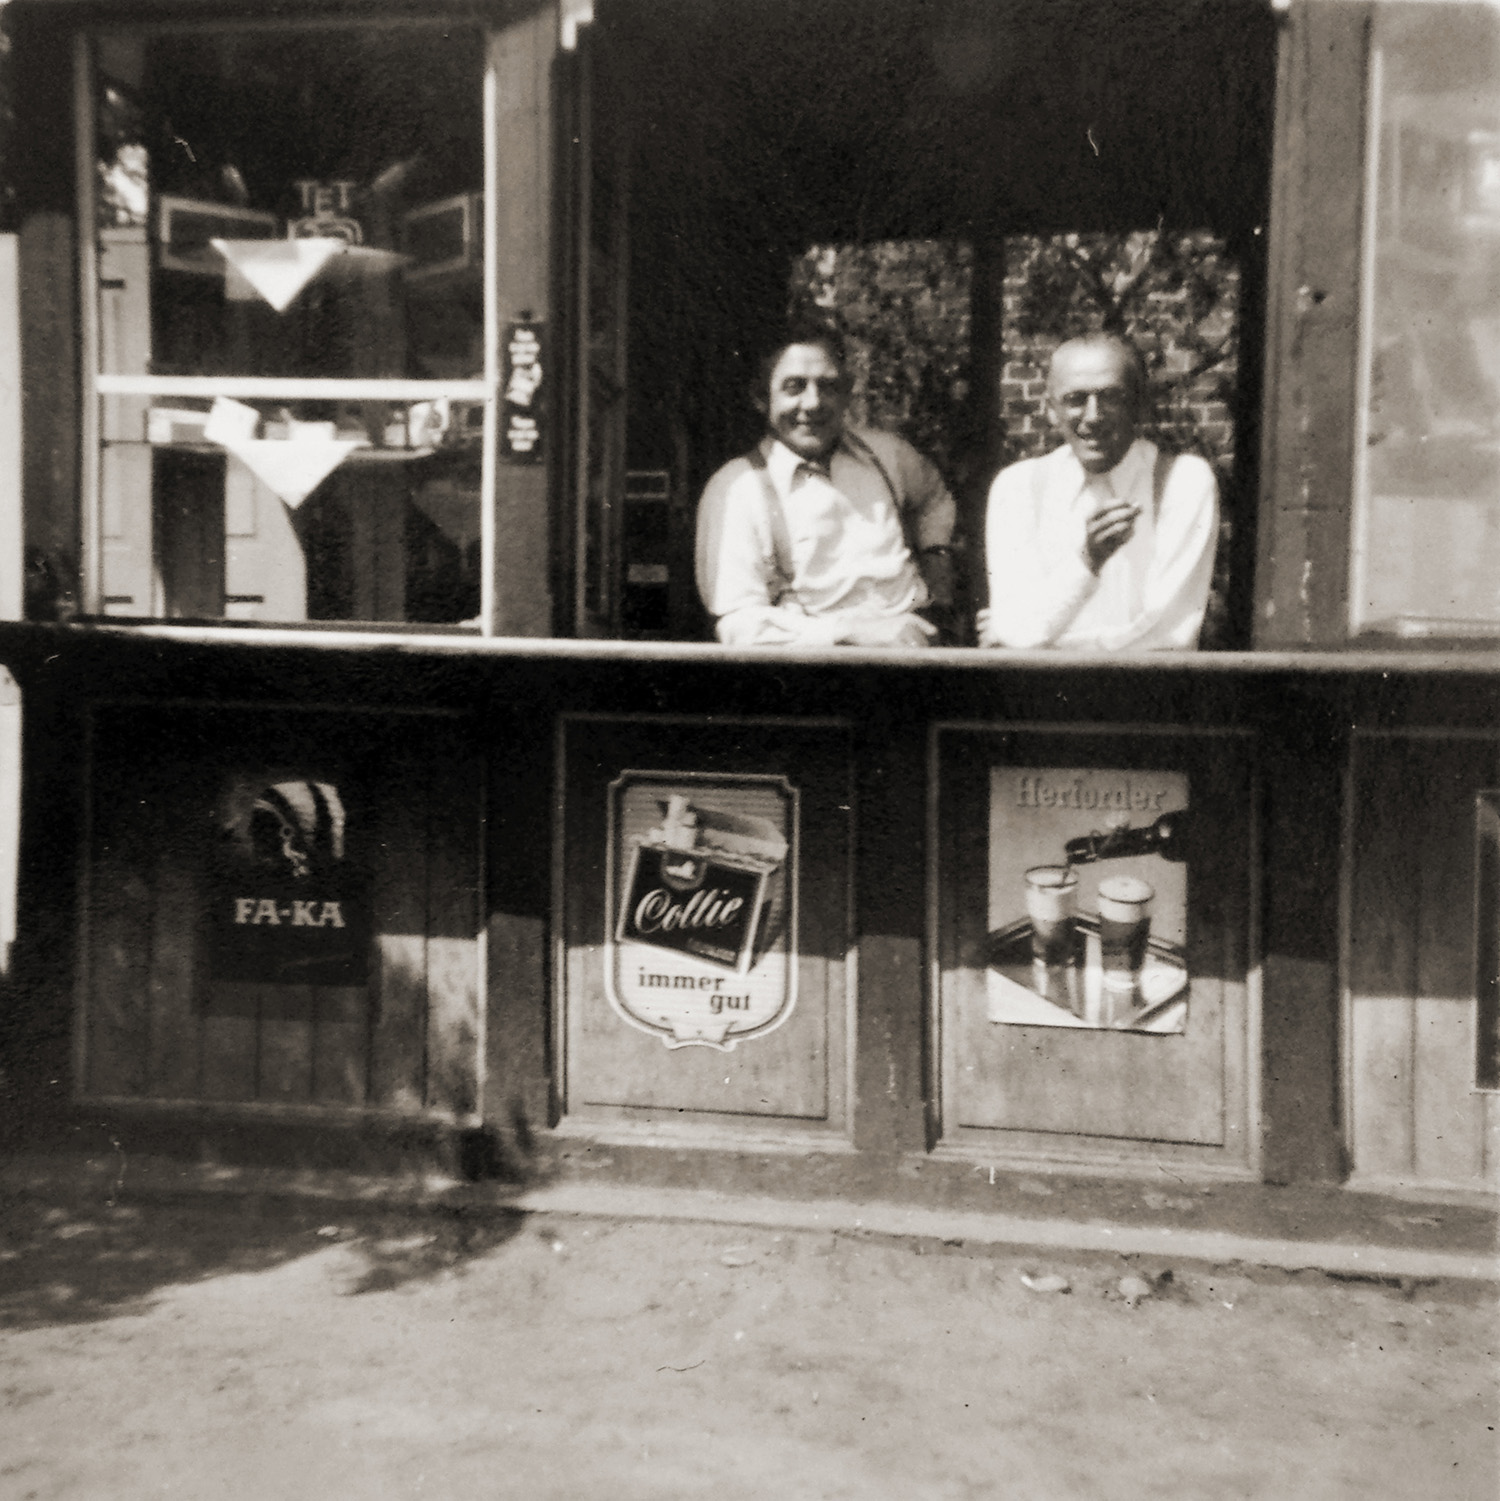 Rechts im Bild Paul Heimerl in seinem Verkaufspavillon neben der Schranke,  der im Volksmund "Giftbude" genannt wurde, weil dat dor wat gift.